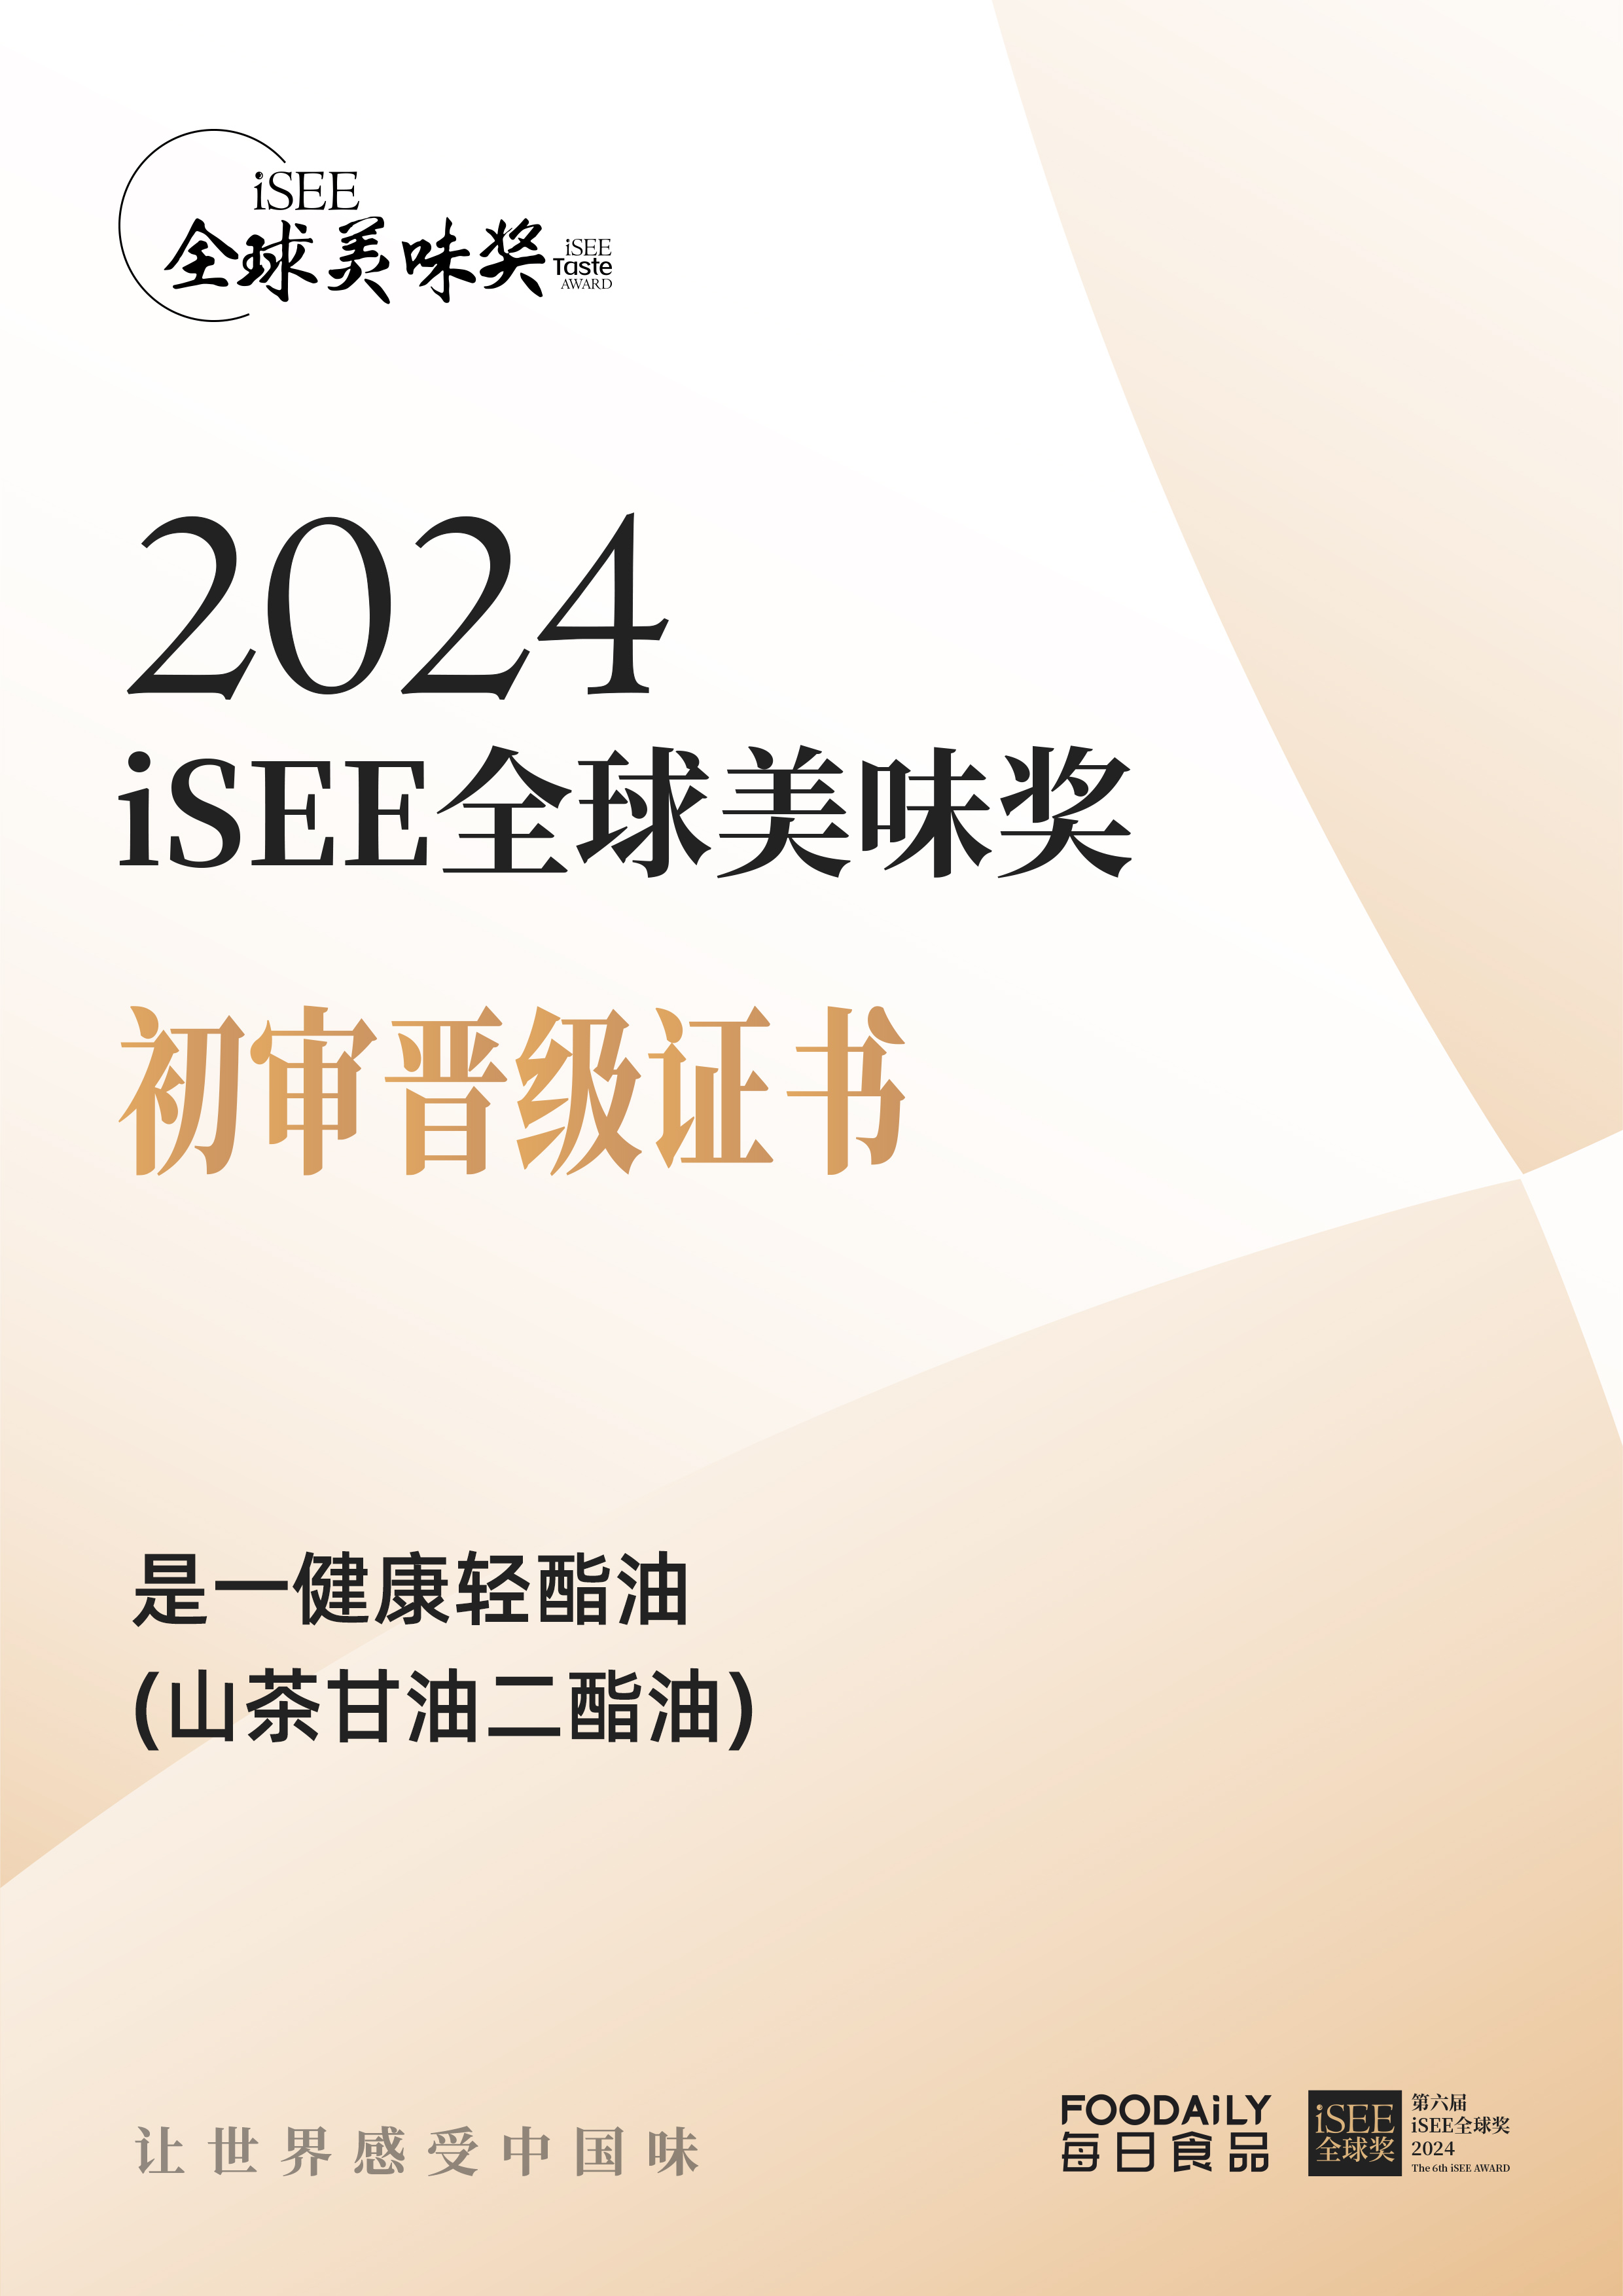 iSEE全球美味奖获奖证书.jpg